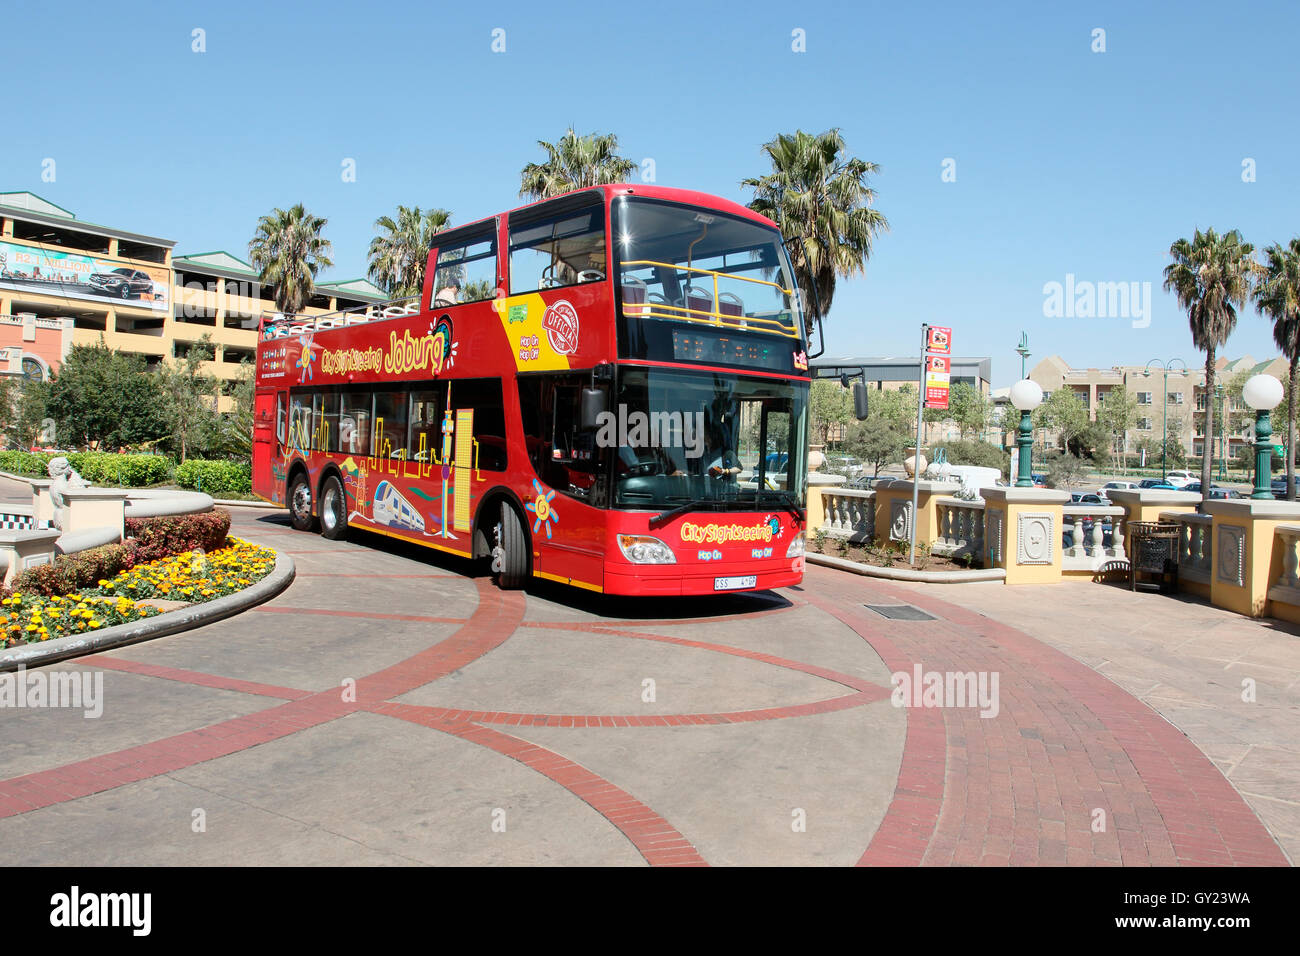 Vue voyant l'bus touristique, Johannesburg, Afrique du Sud, août 2016 Banque D'Images